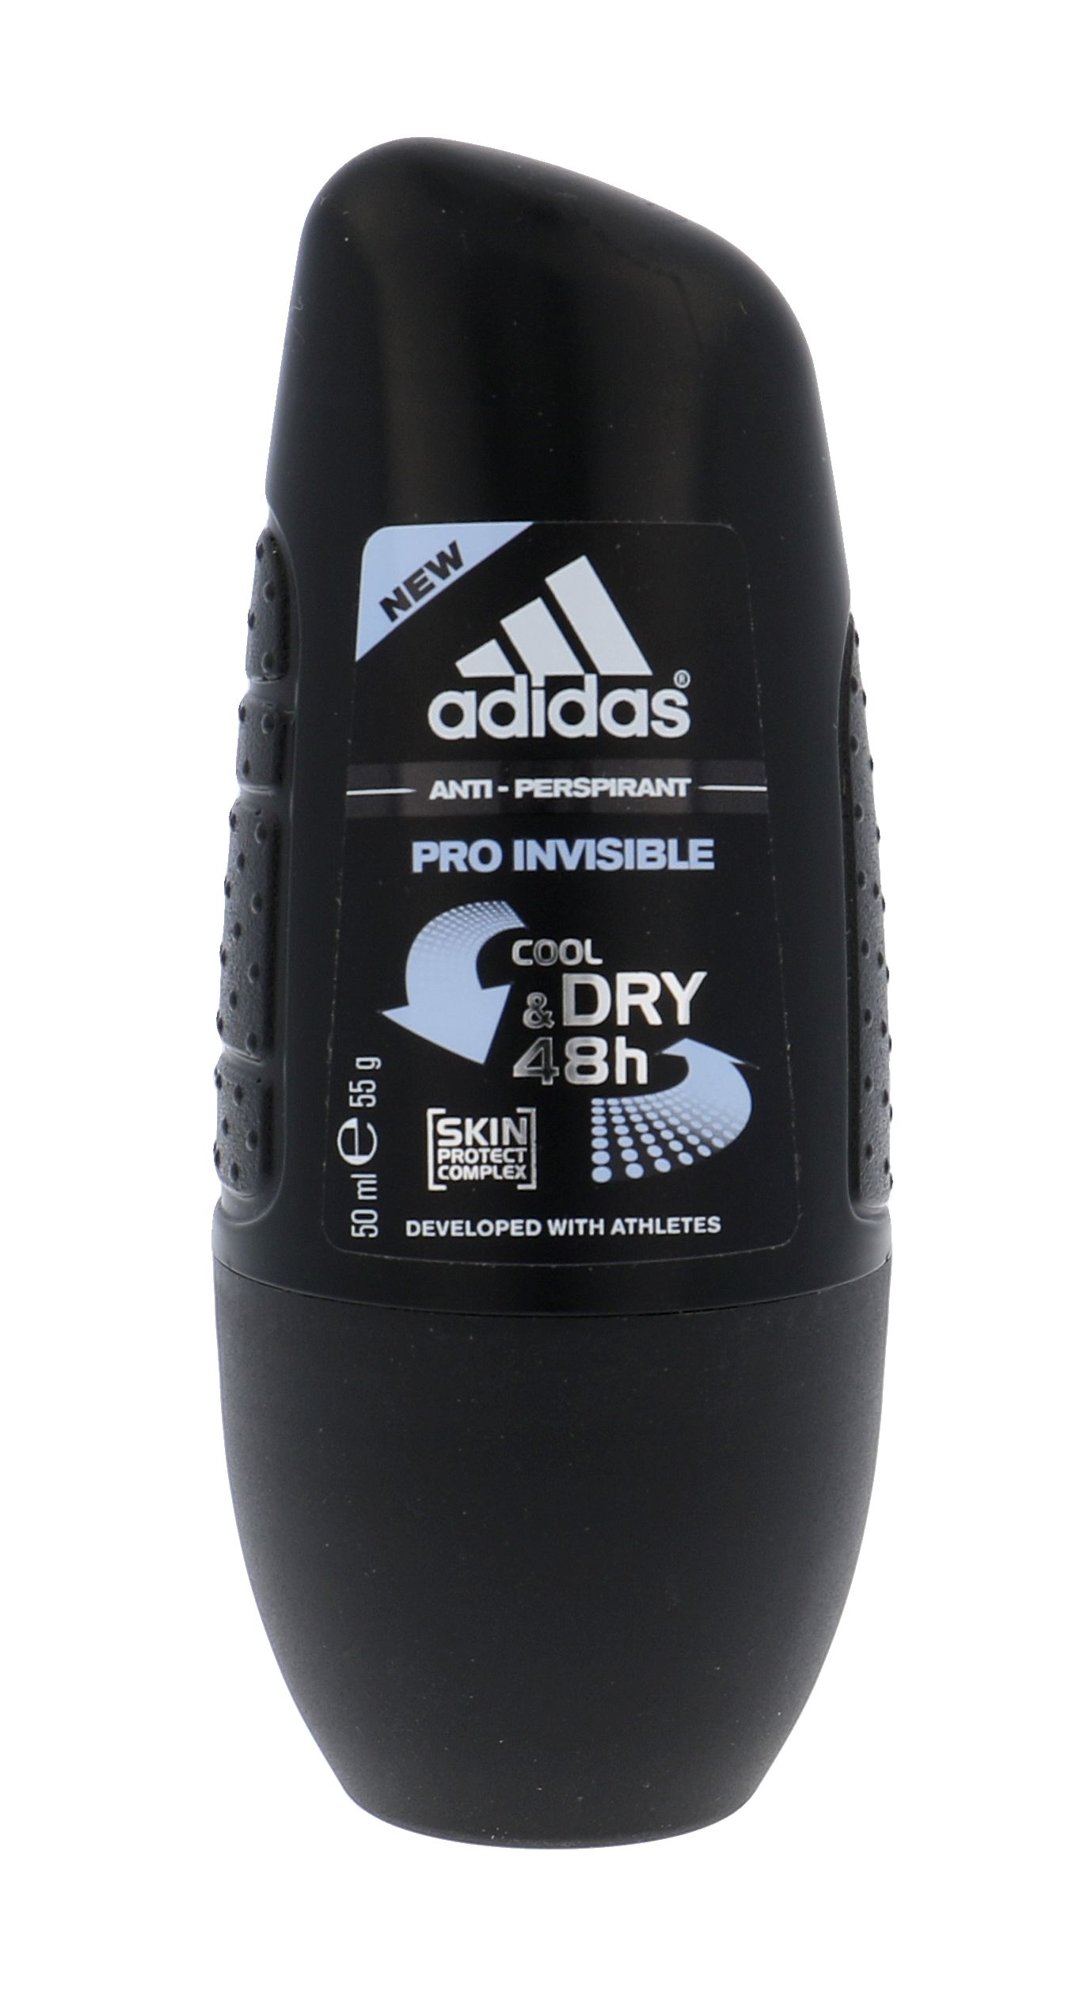 Adidas Action 3 Pro Invisible dezodorantas